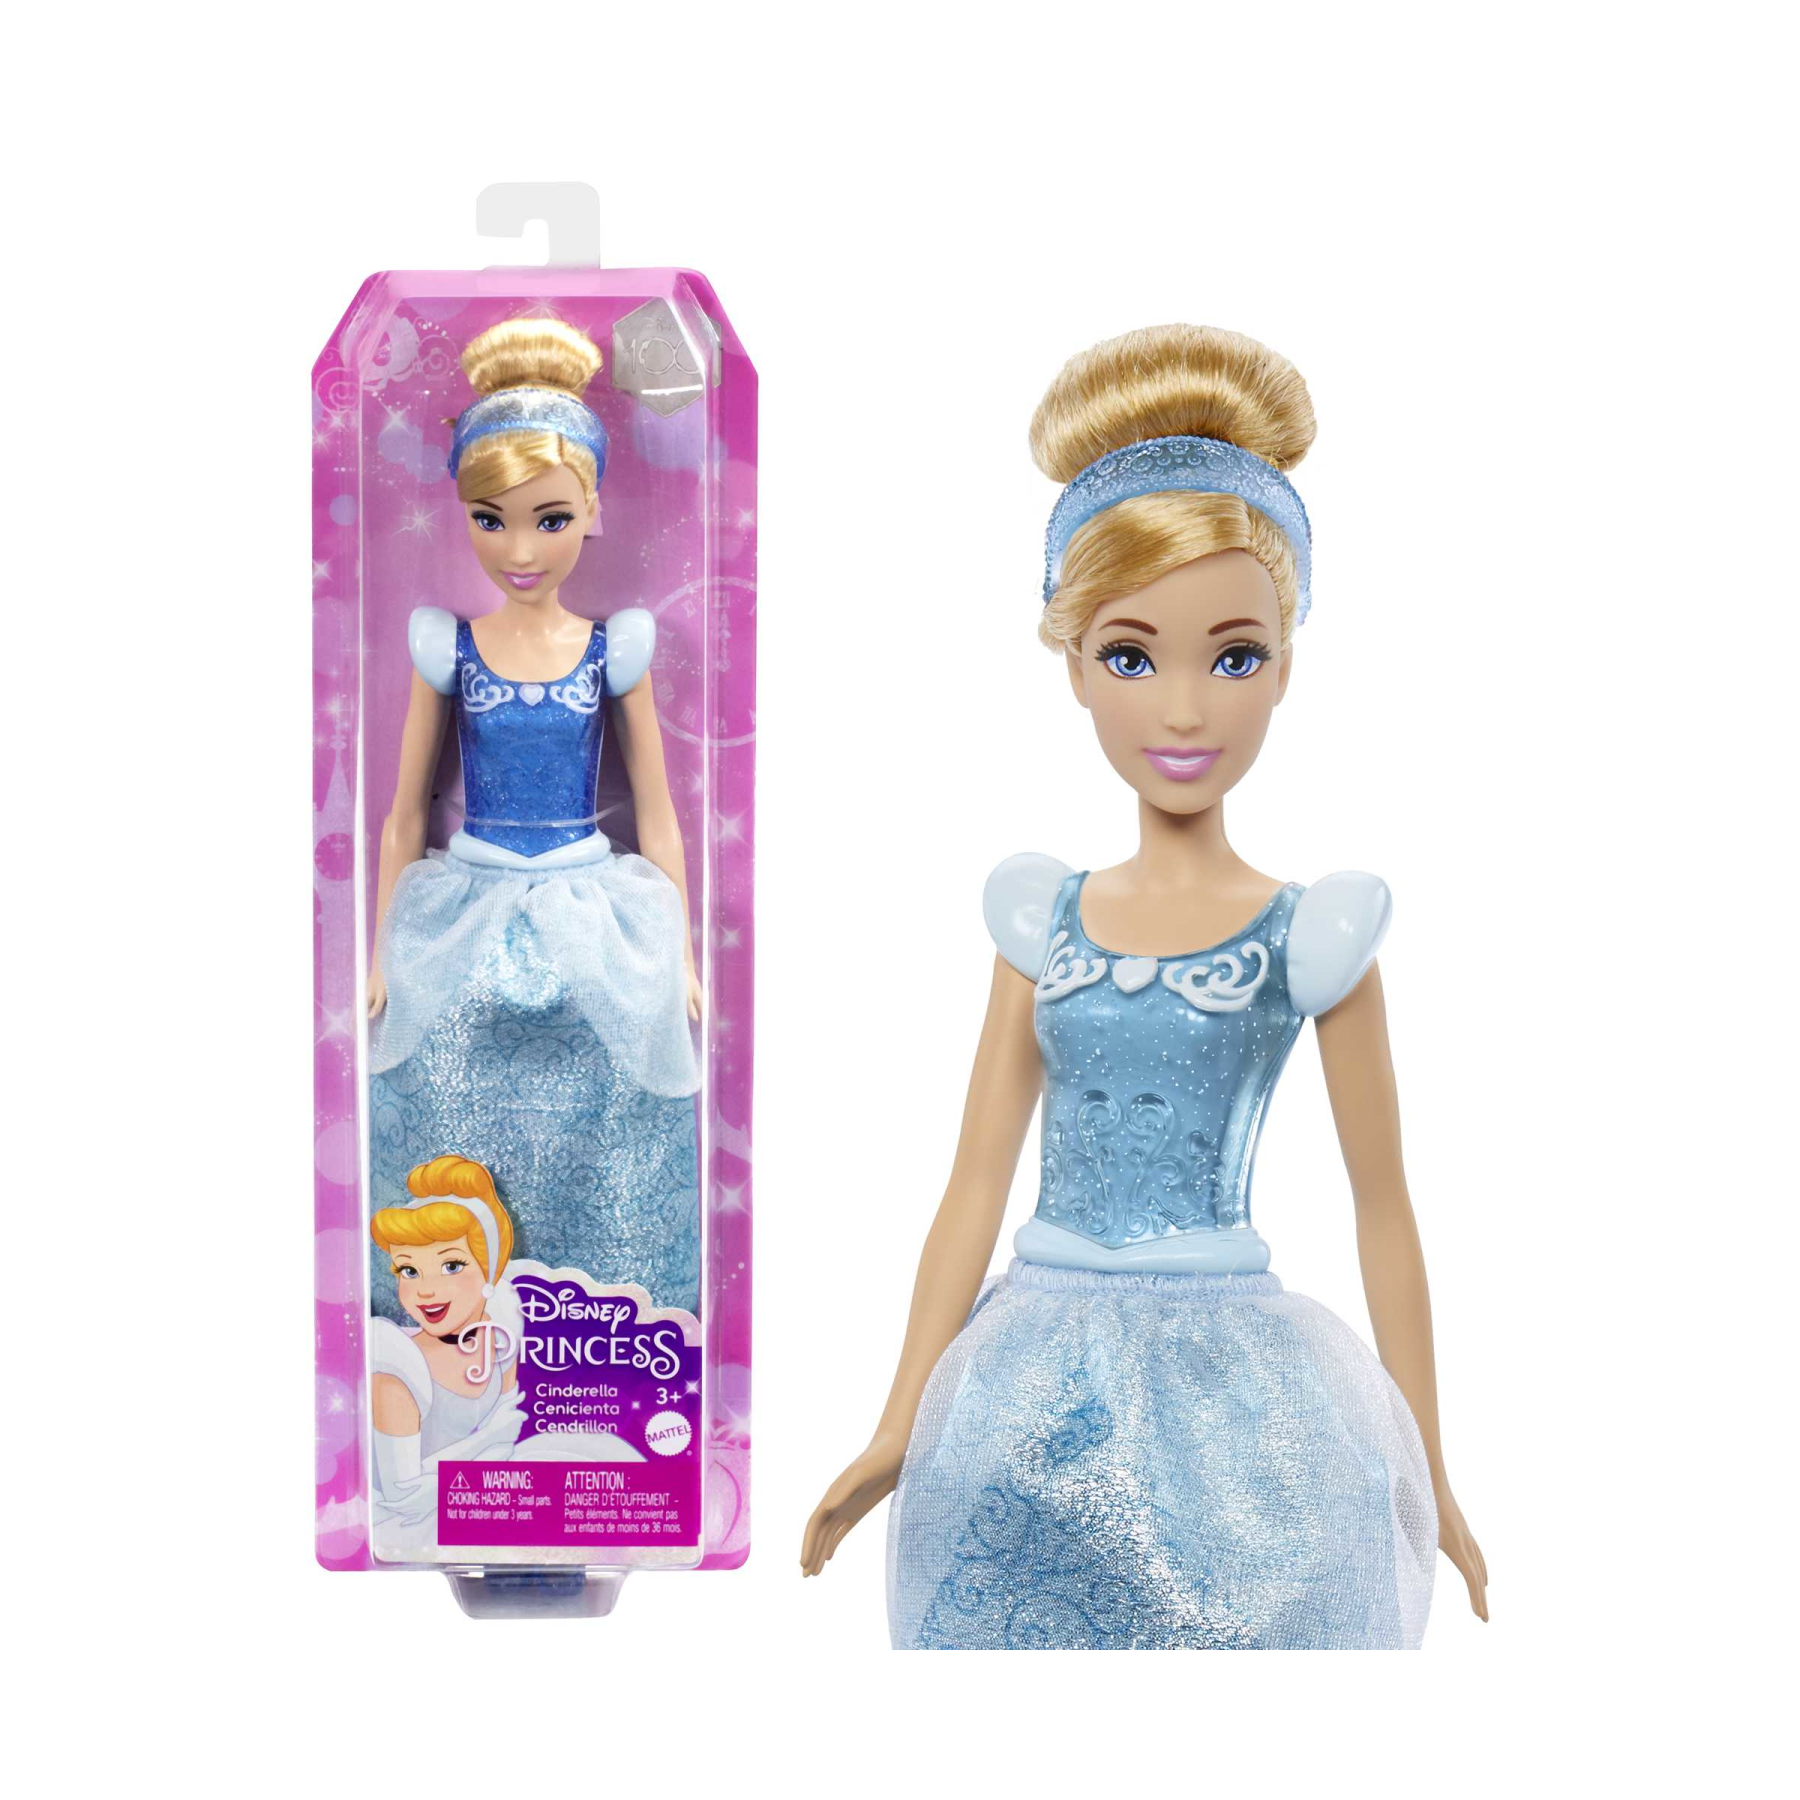 Set Componibili il Castello Di Belle, Playset trasportabile con bambola  Belle, 4 amici e accessori, Disney Frozen in Vendita Online